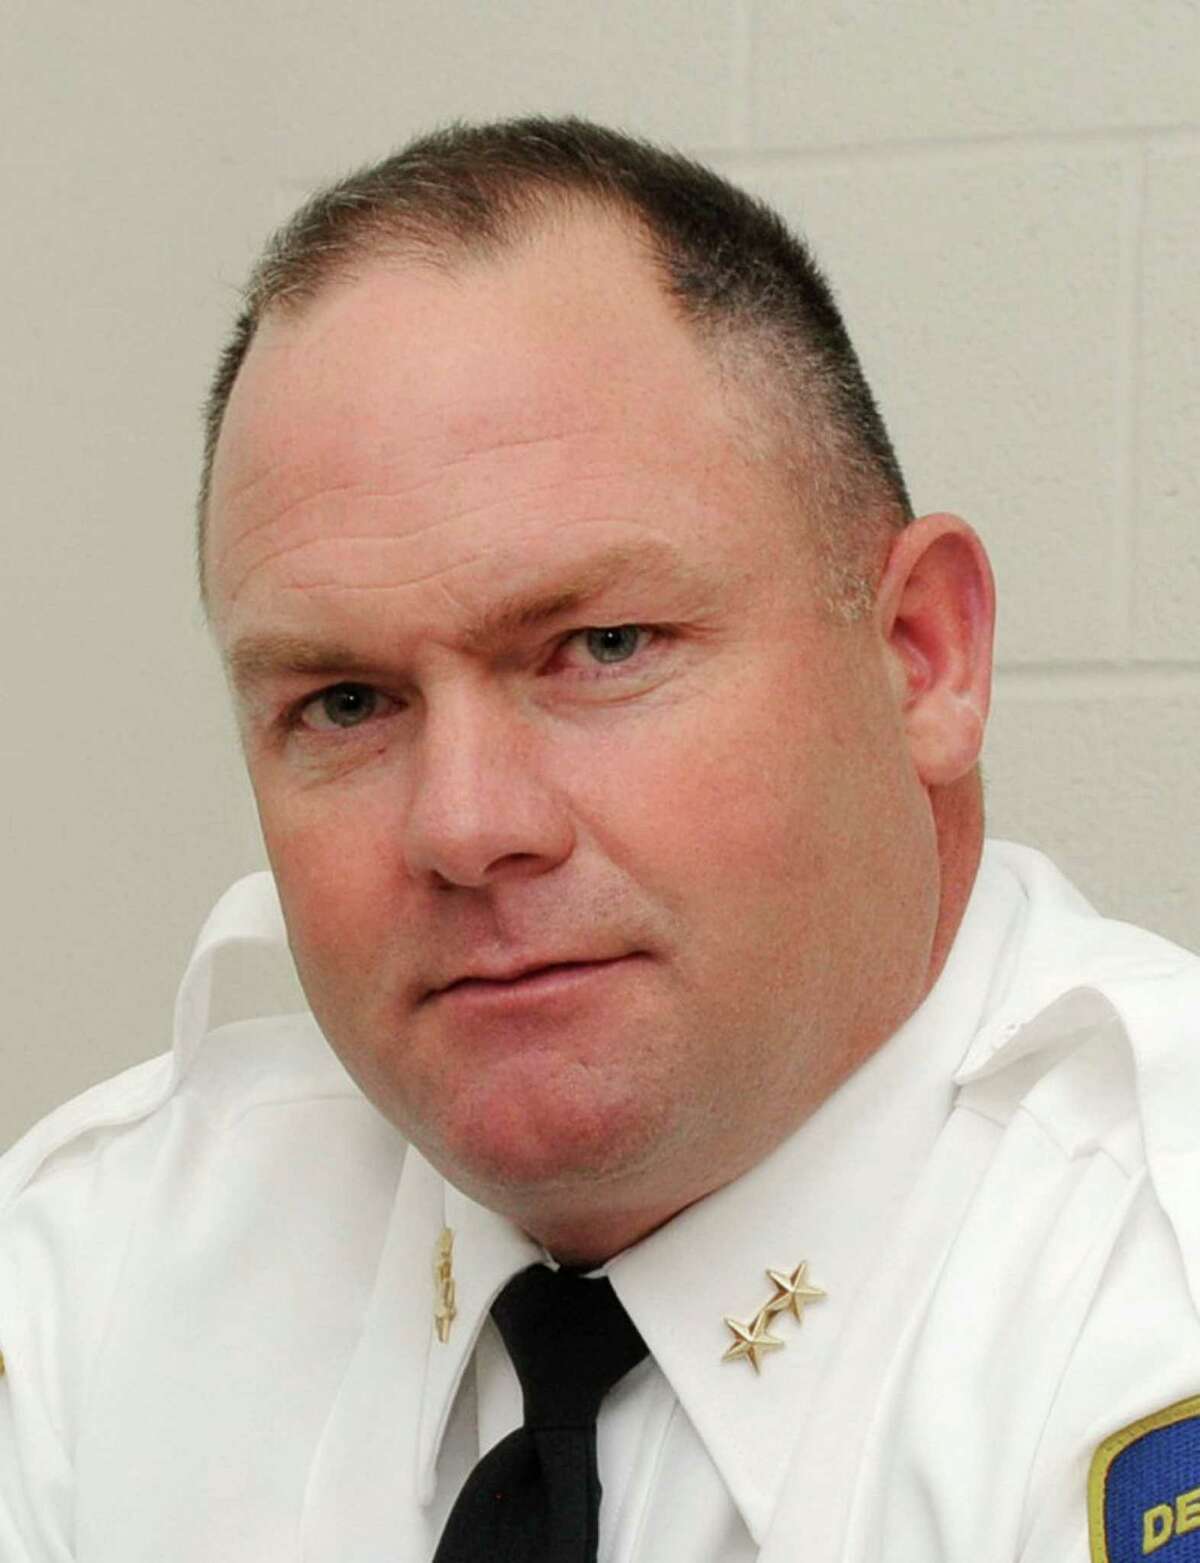 New Milford Police Chief Shawn Boyne